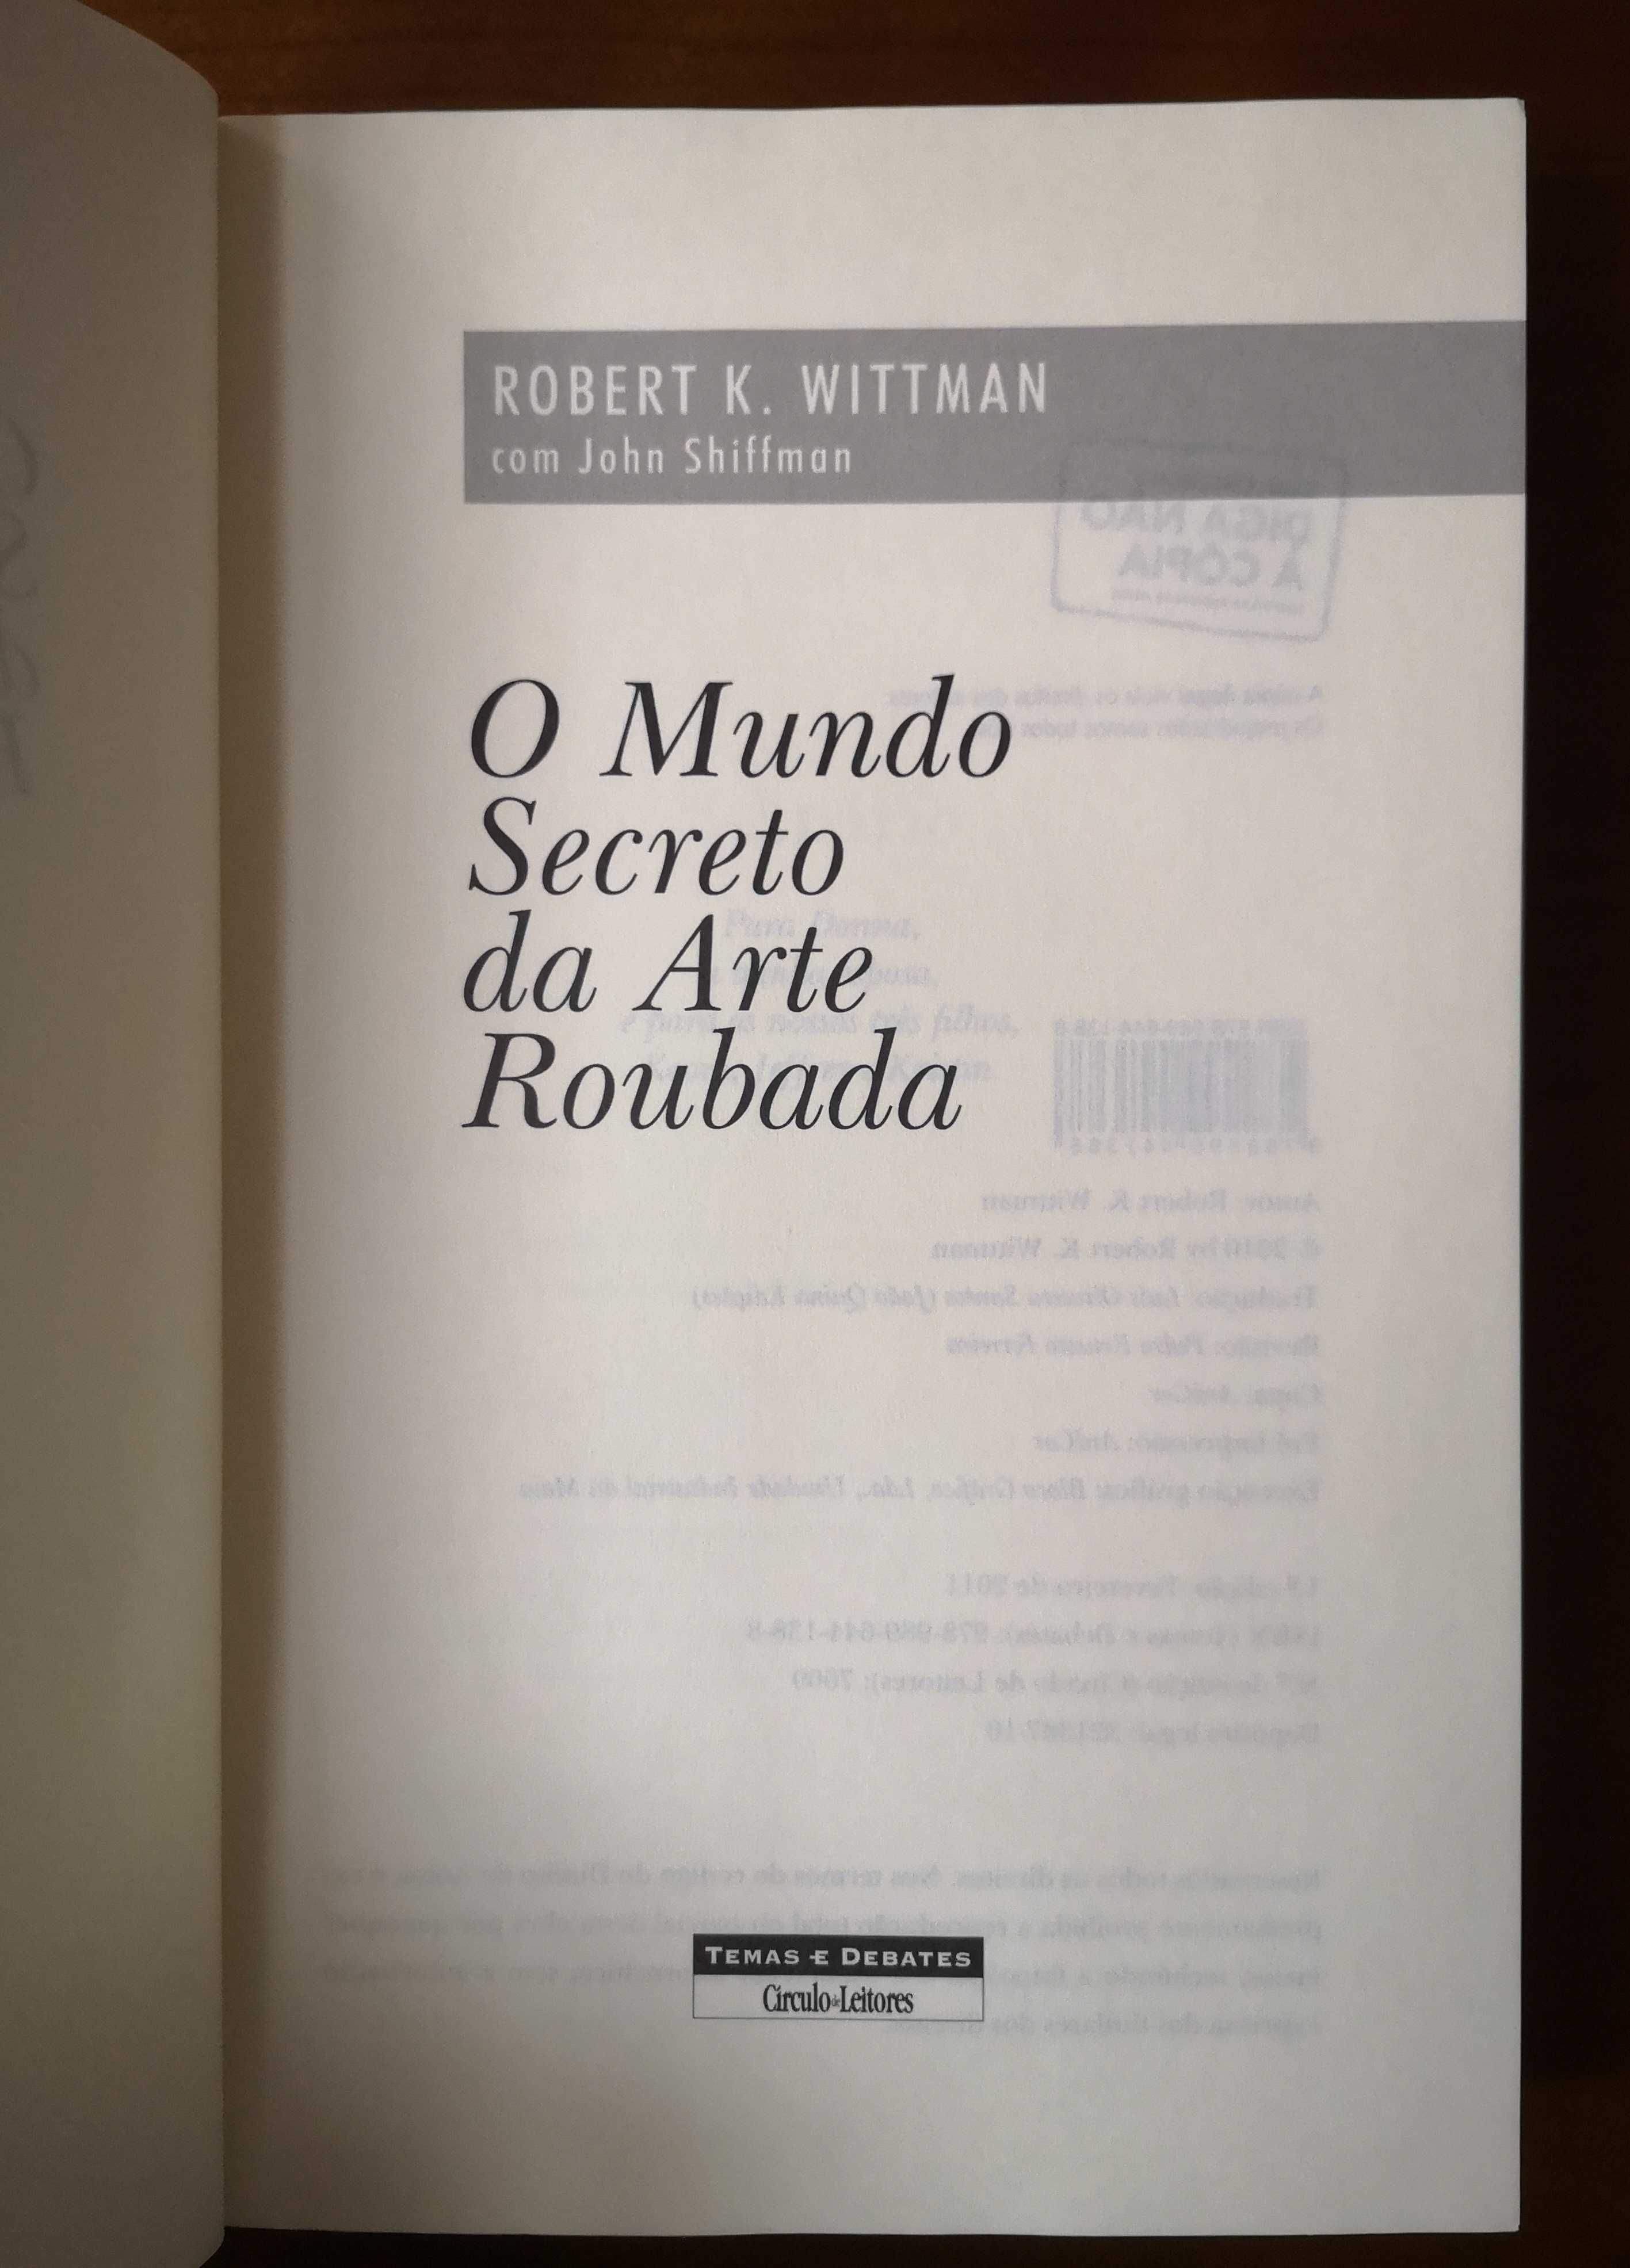 "O Mundo Secreto da Arte Roubada" de Robert K. Wittman